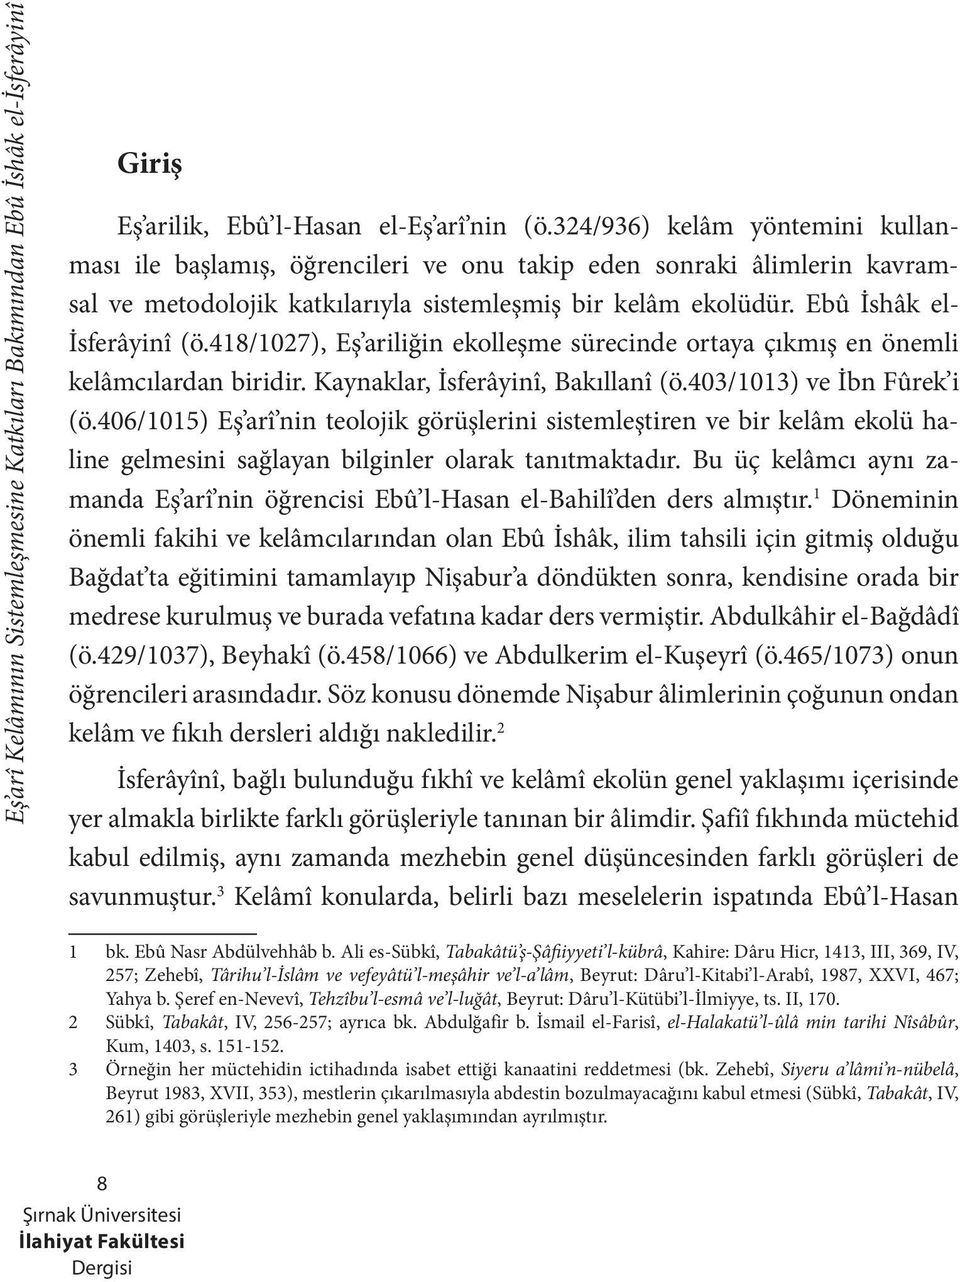 418/1027), Eş ariliğin ekolleşme sürecinde ortaya çıkmış en önemli kelâmcılardan biridir. Kaynaklar, İsferâyinî, Bakıllanî (ö.403/1013) ve İbn Fûrek i (ö.